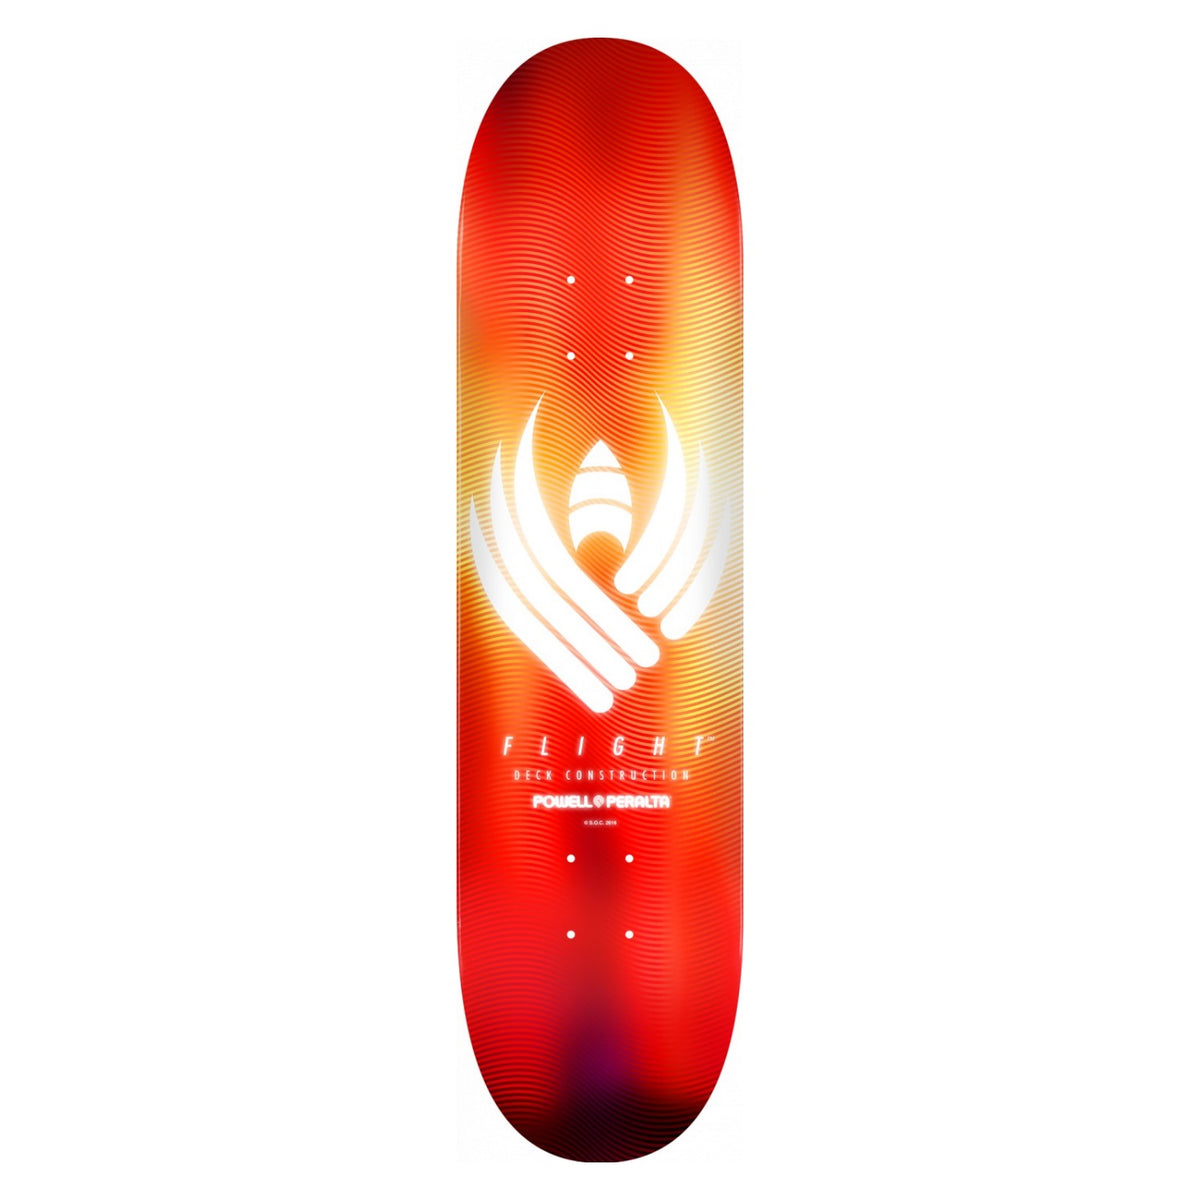 Powell-Peralta Flight Skateboard Deck, Glow Red, Shape 242, 8.0"